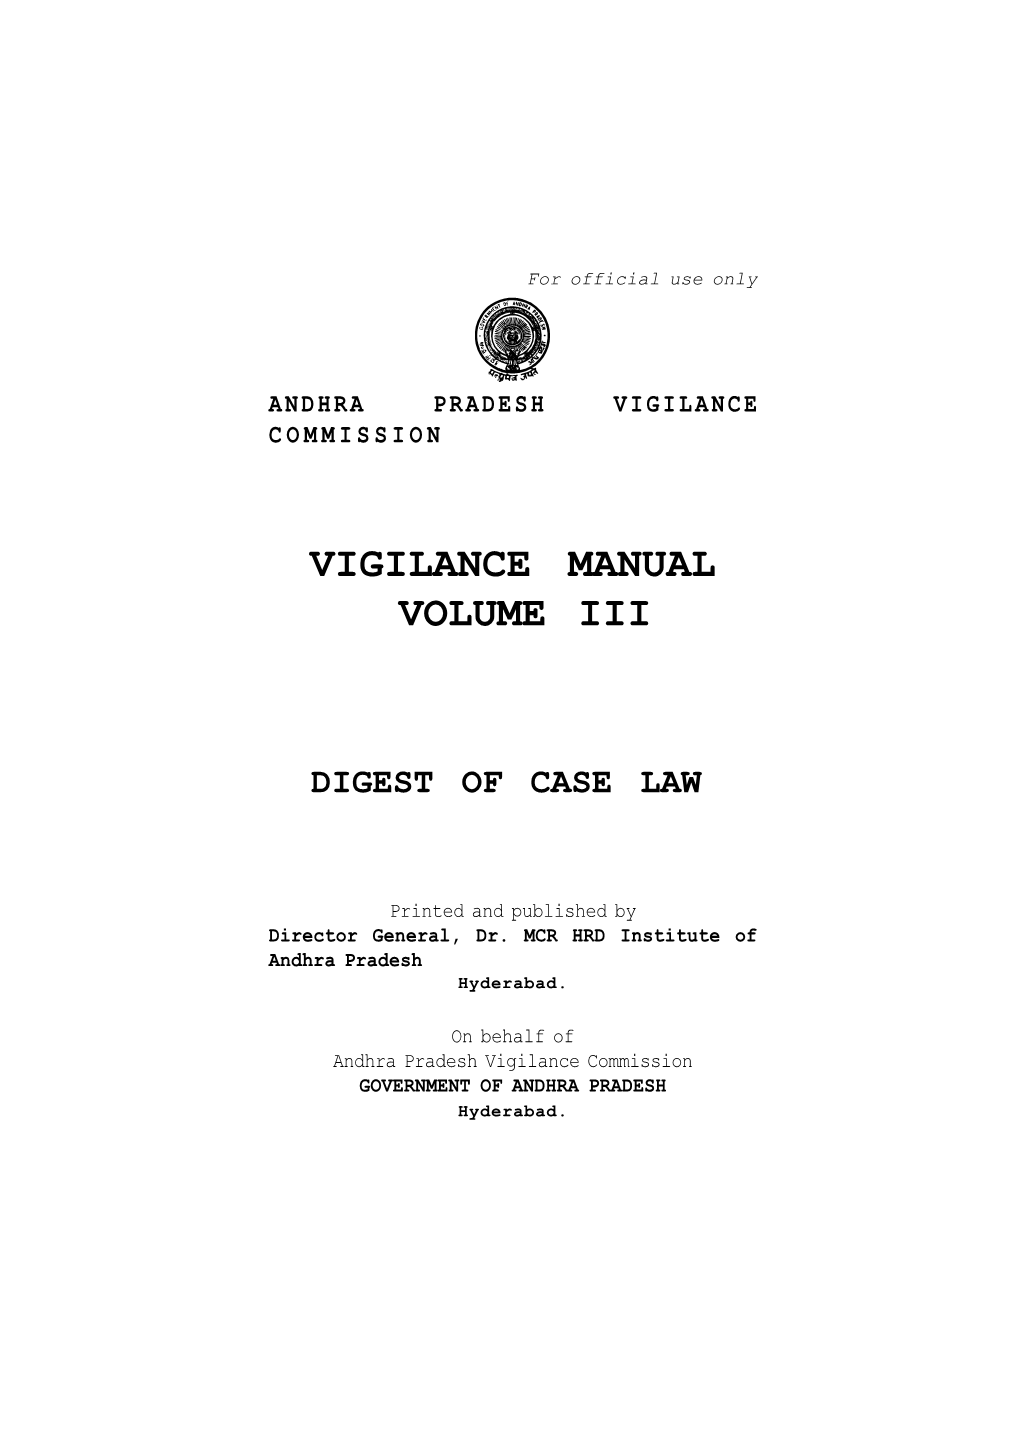 Vigilance Manual Volume Iii